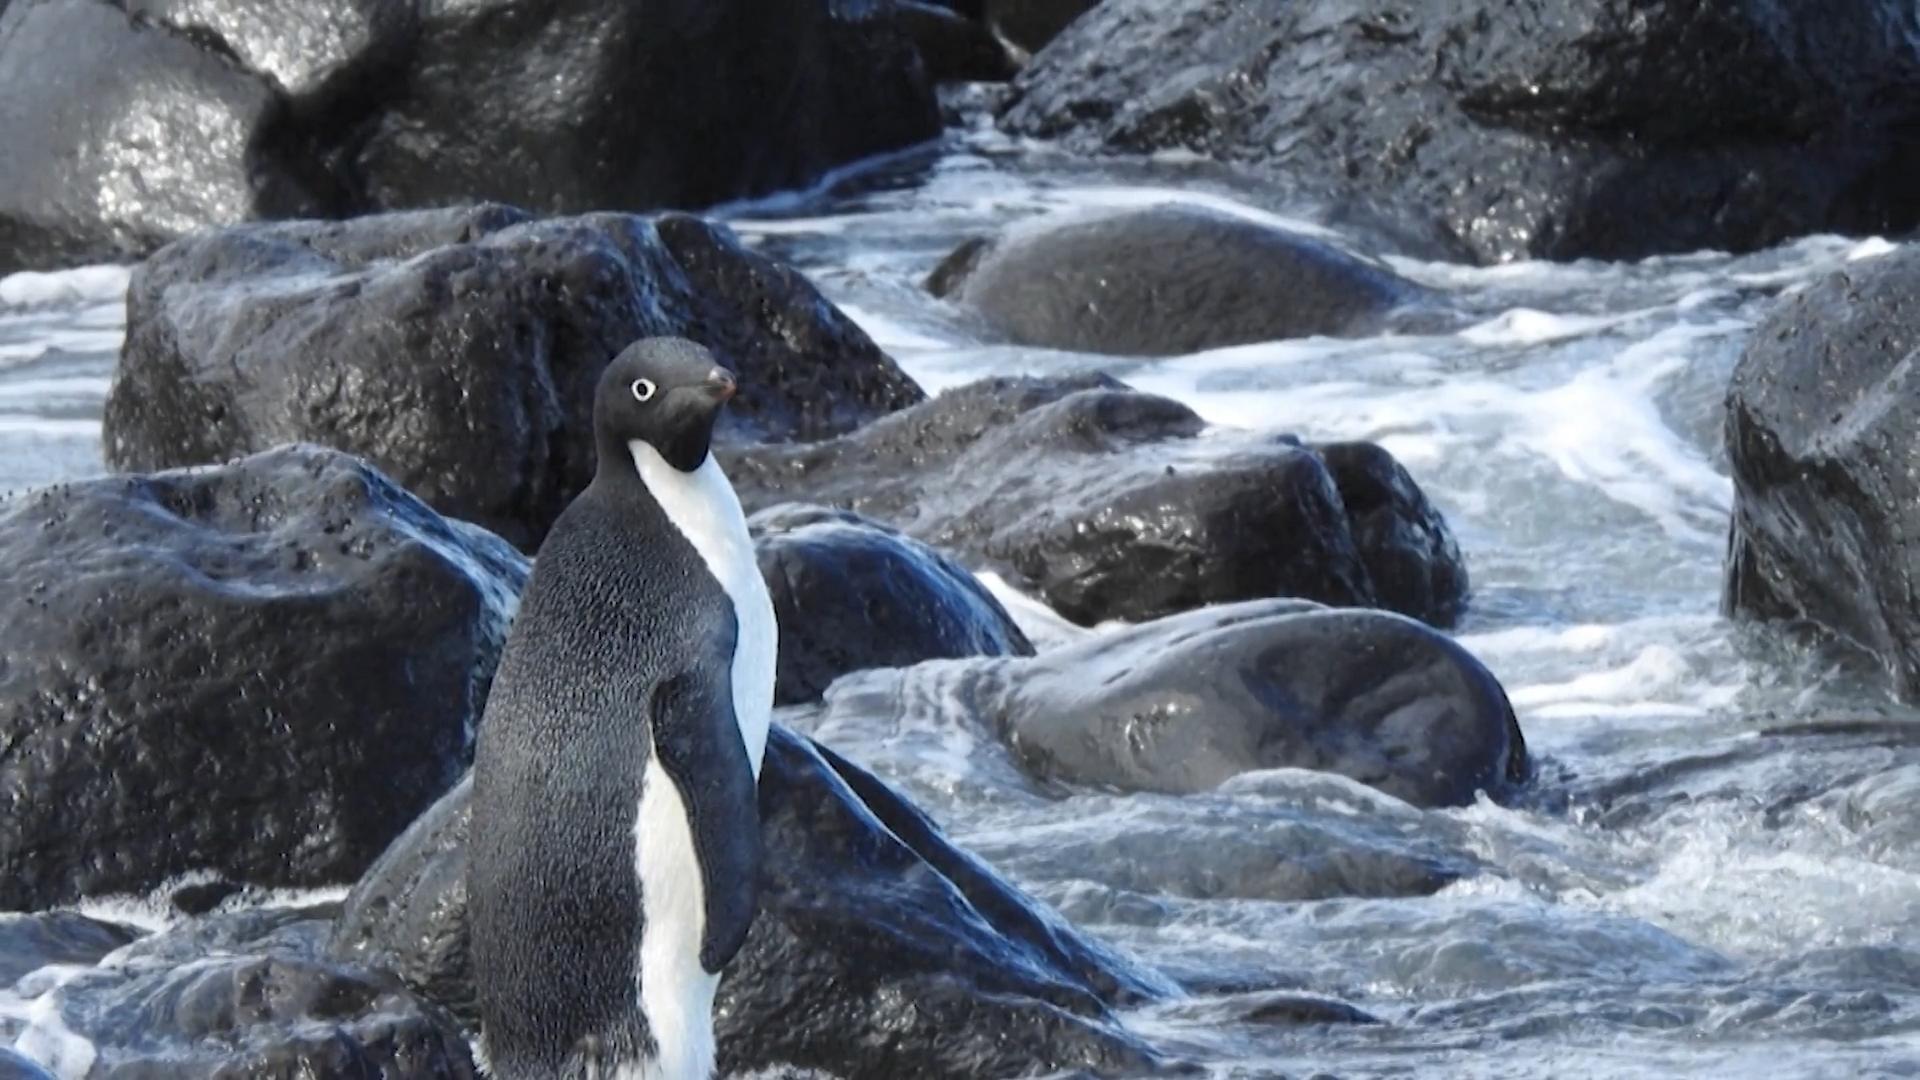 Pinguin reist versehentlich 3.000km nach Neuseeland Falsch abgebogen?